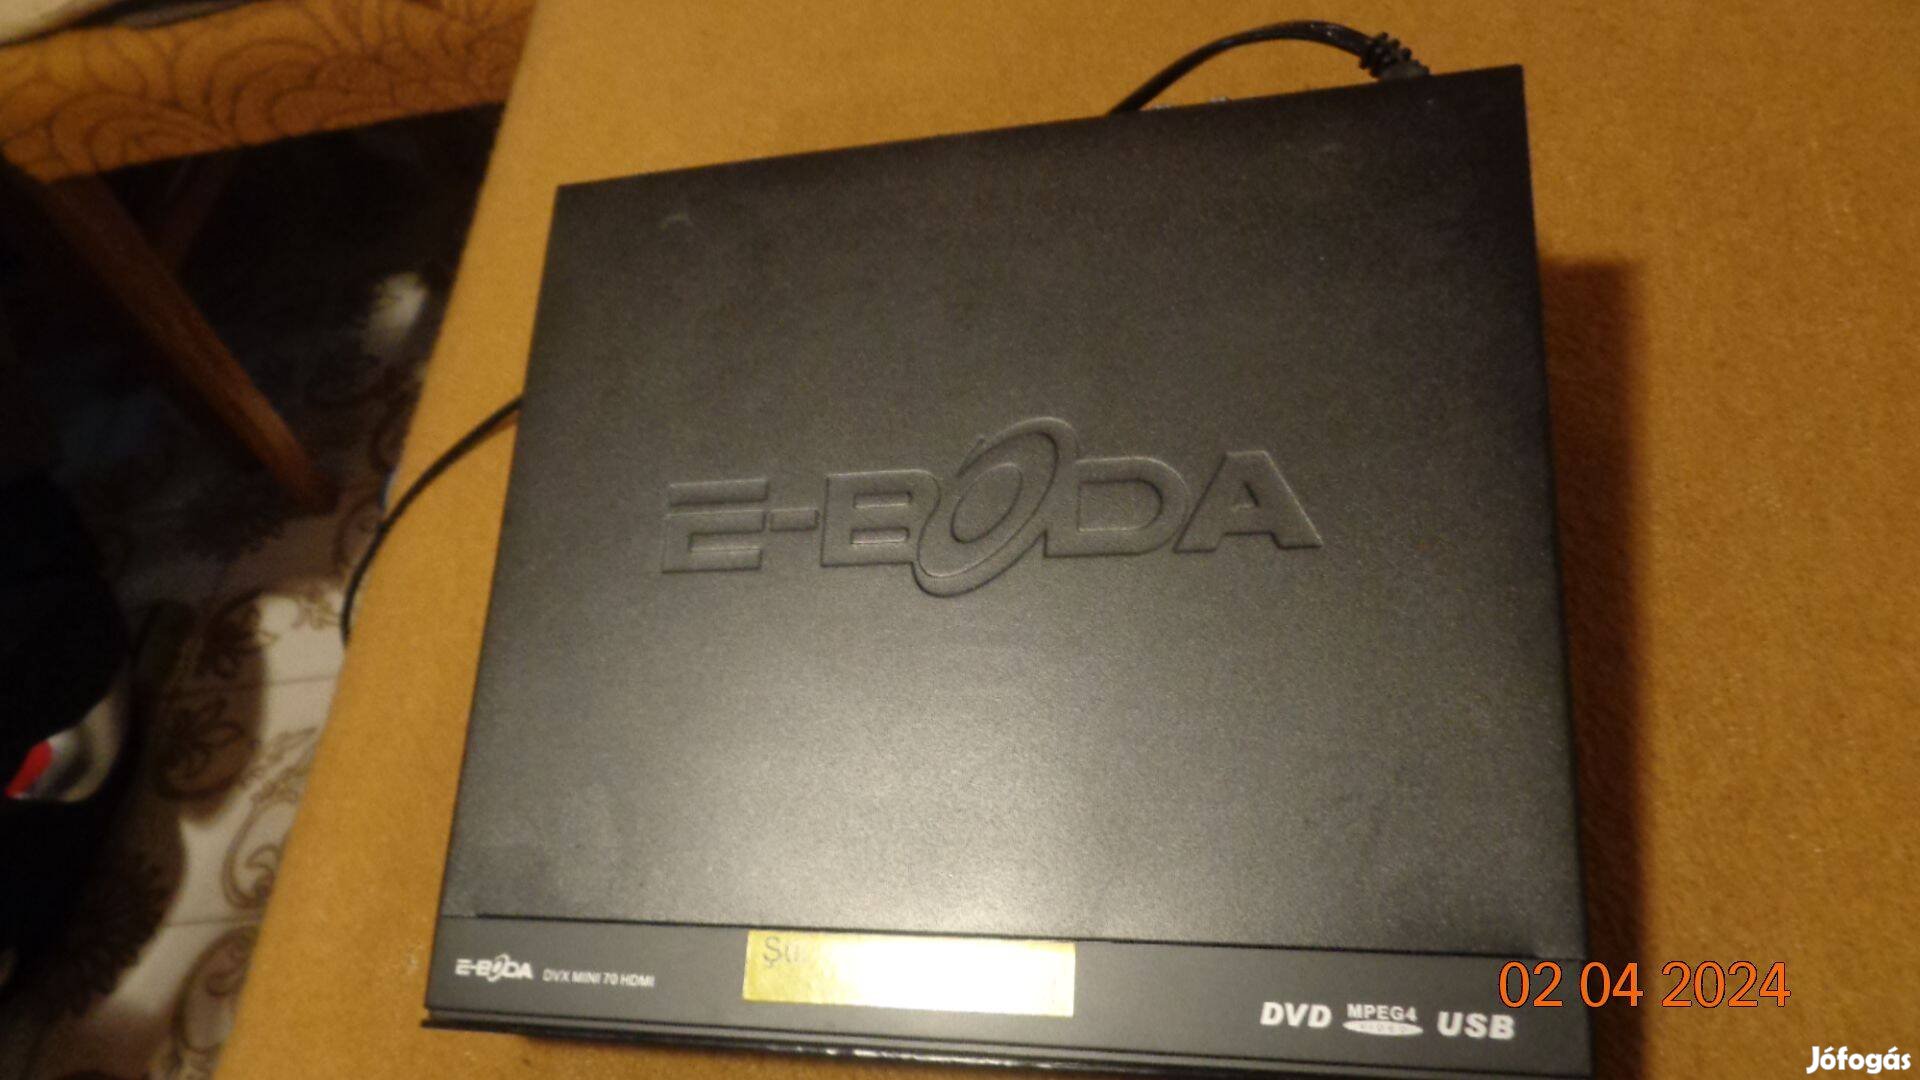 E-Boda Dvx 70 HDMI / DVD - MPEG4 USB , lelátszó